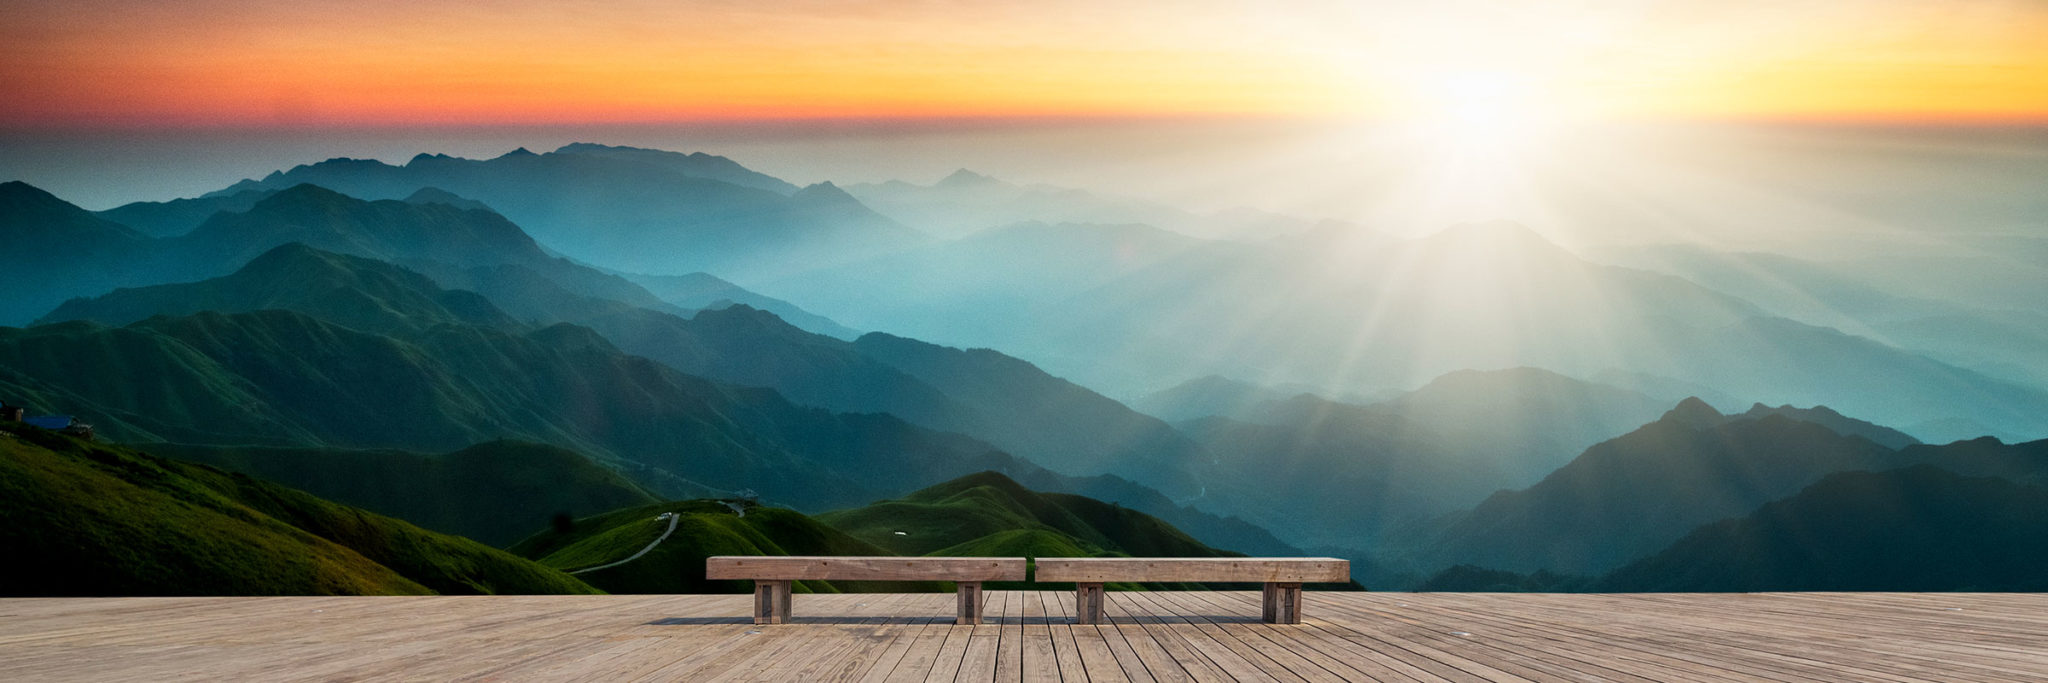 Zen Mountain Sunset